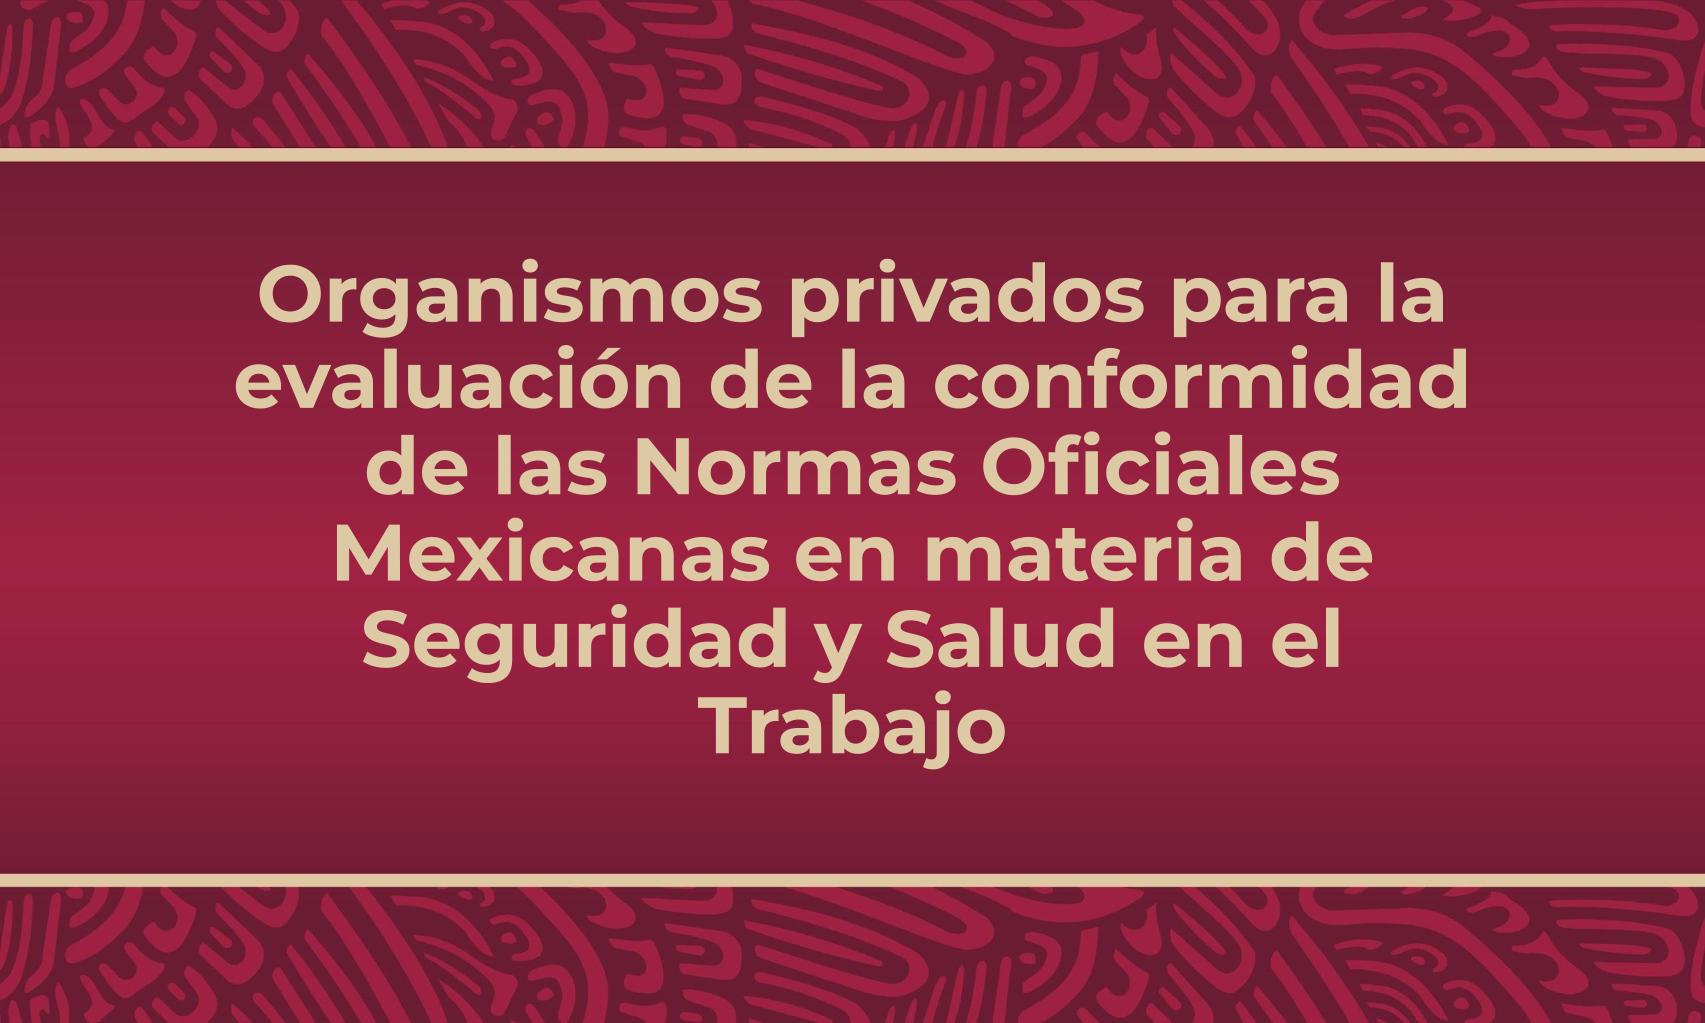 Organismos Privados para la Evaluación de la Conformidad de las Normas Oficiales Mexicanas en materia de seguridad y salud en el trabajo